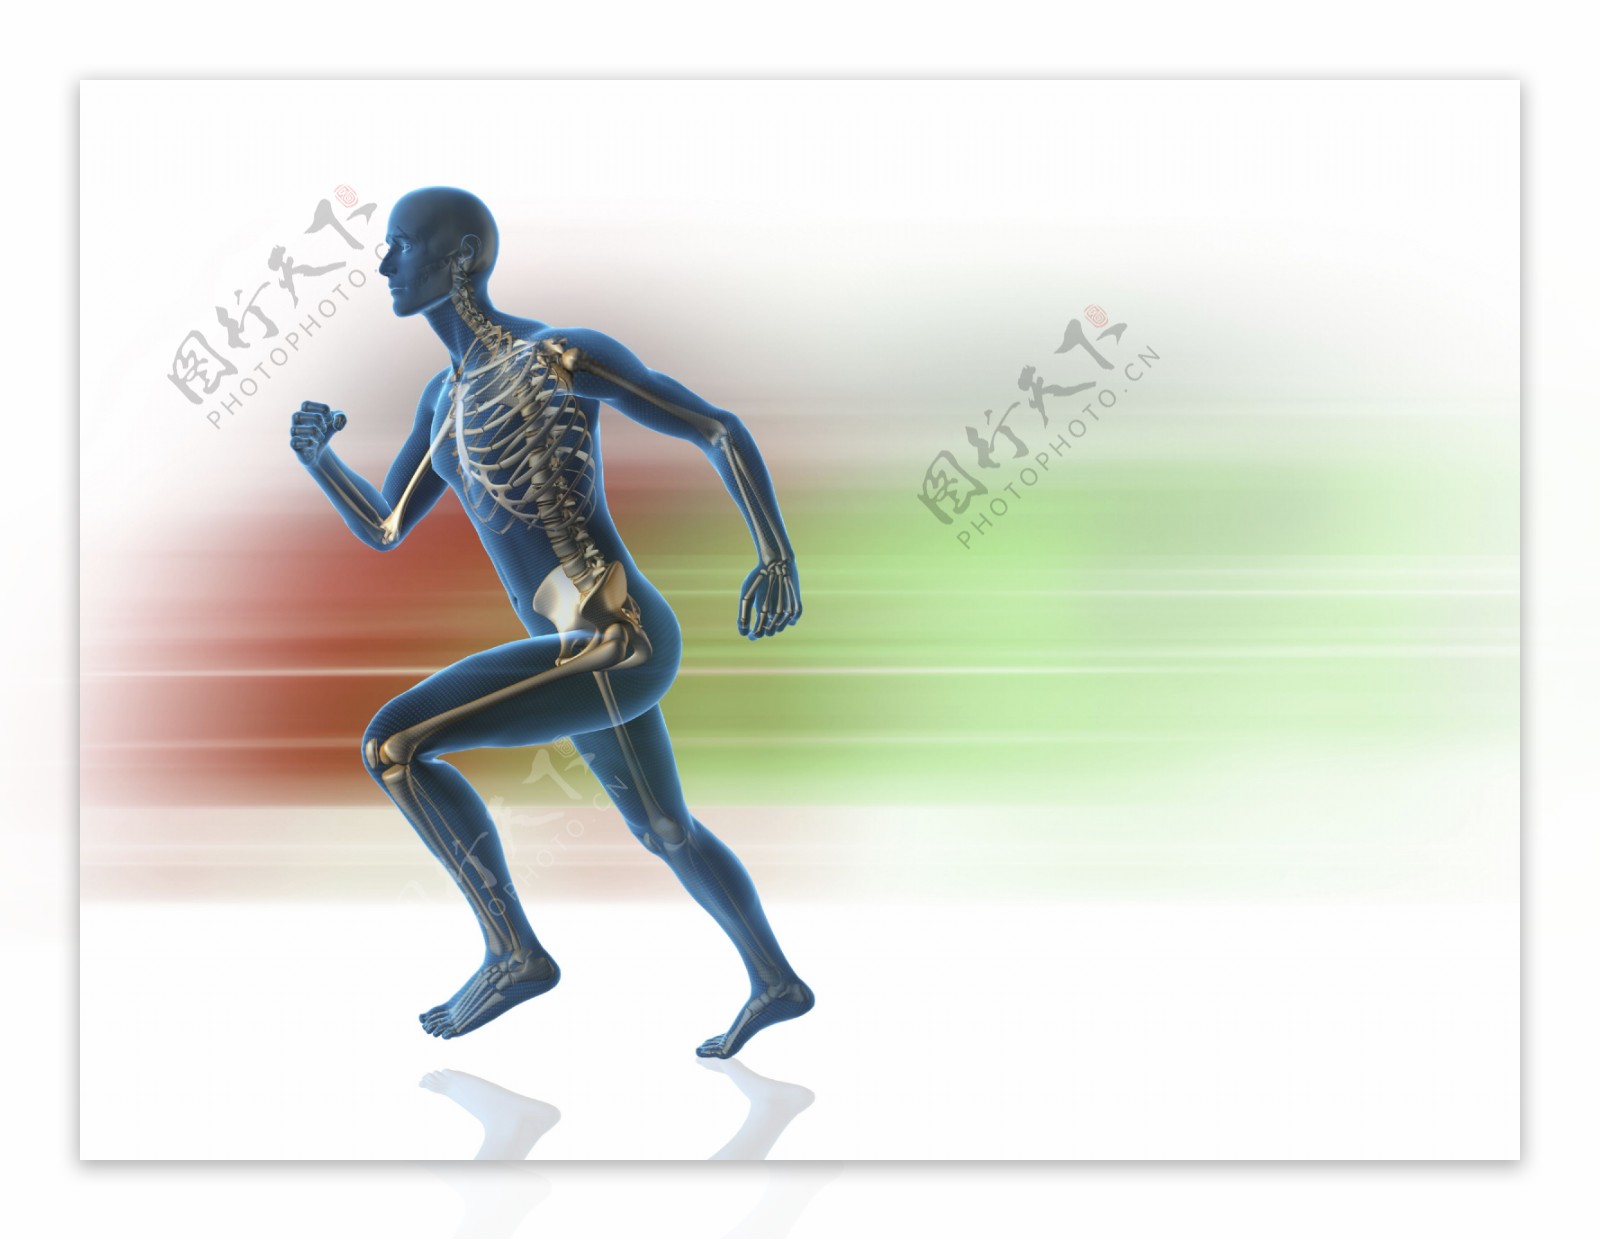 奔跑时的男性骨骼示意图片